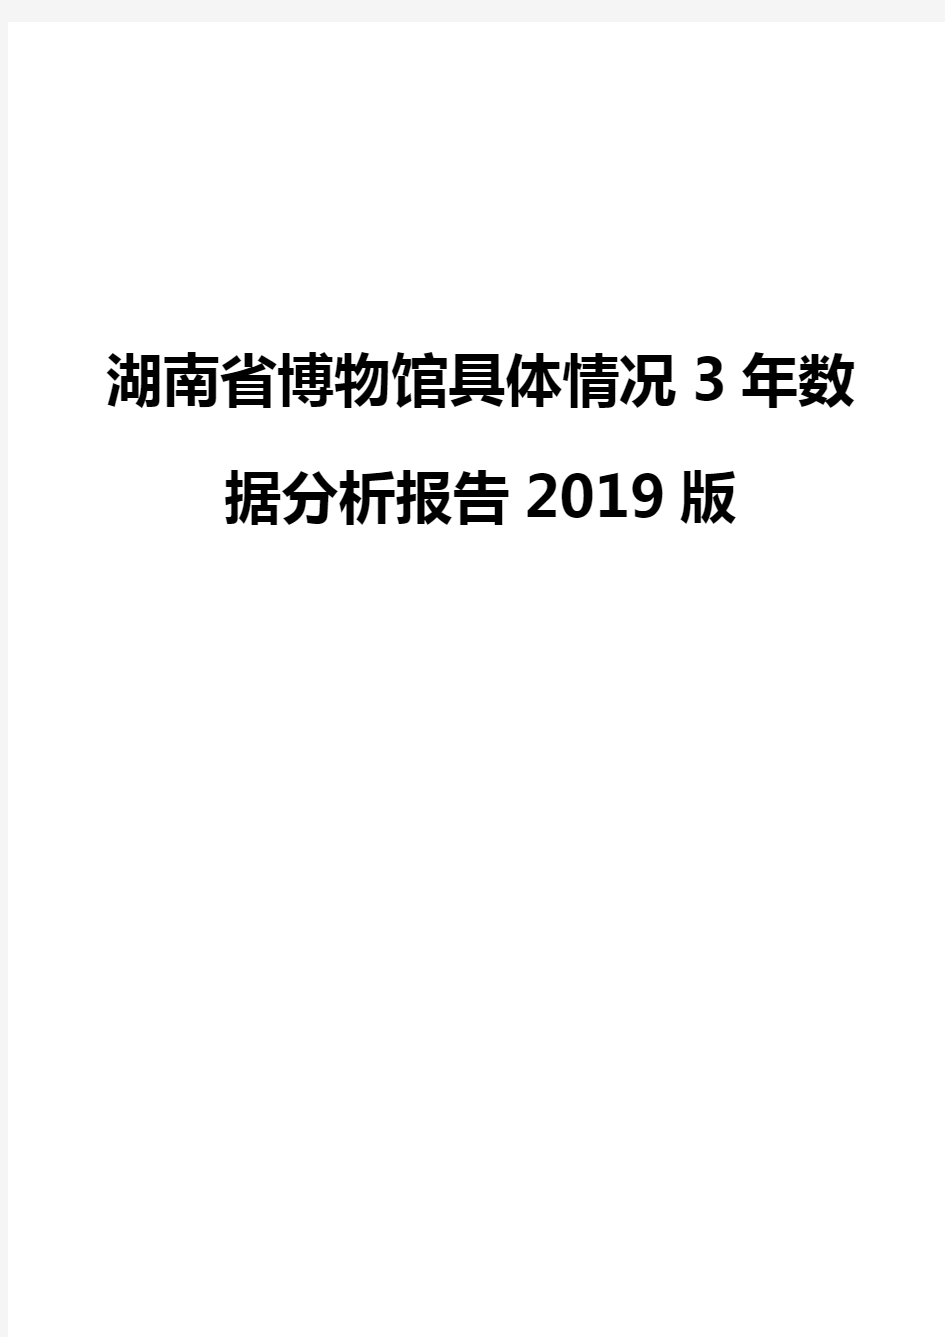 湖南省博物馆具体情况3年数据分析报告2019版